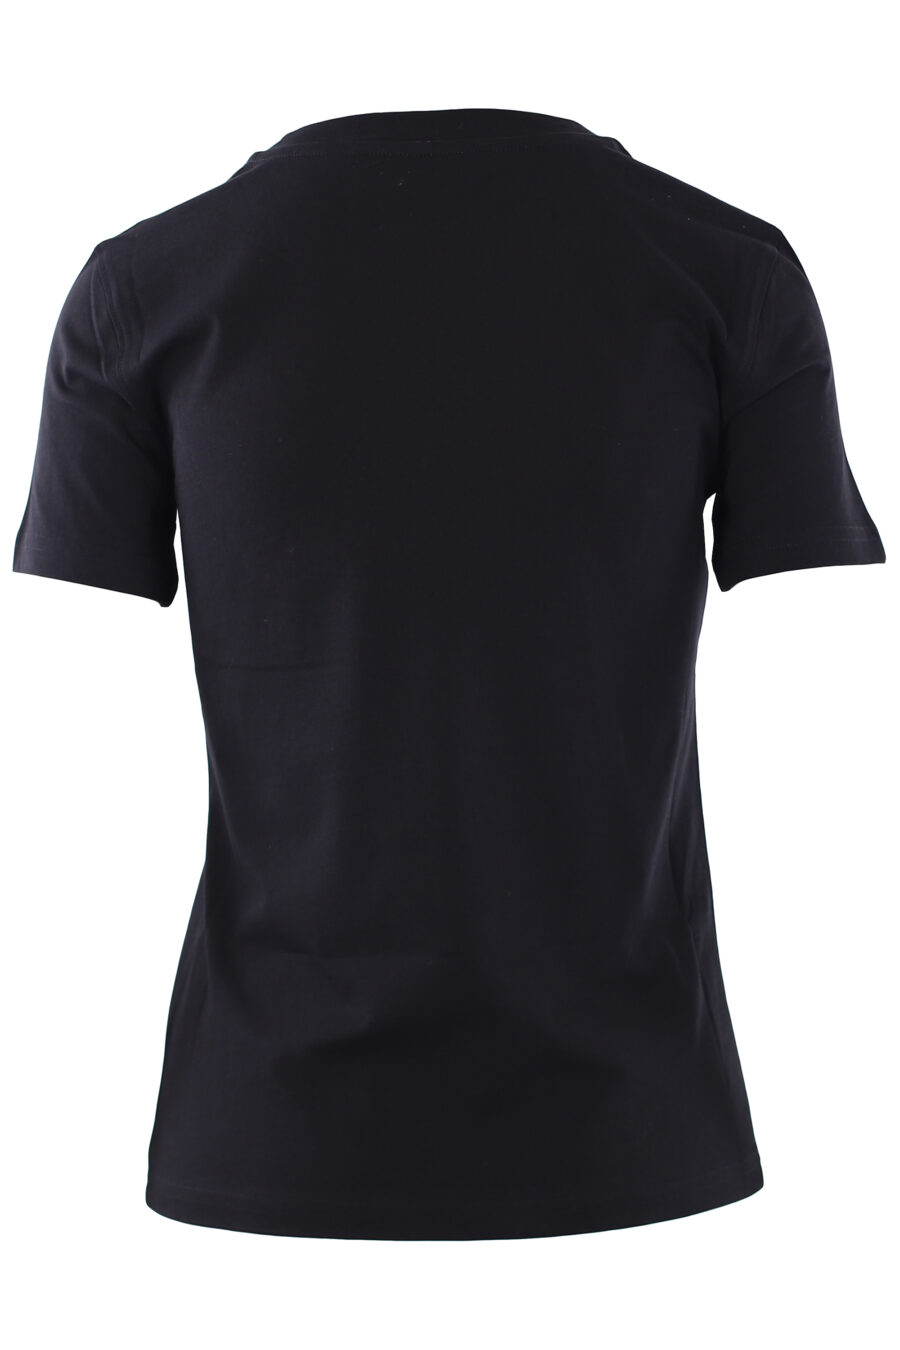 Schwarzes T-Shirt mit Bärenschild-Logo - IMG 0260